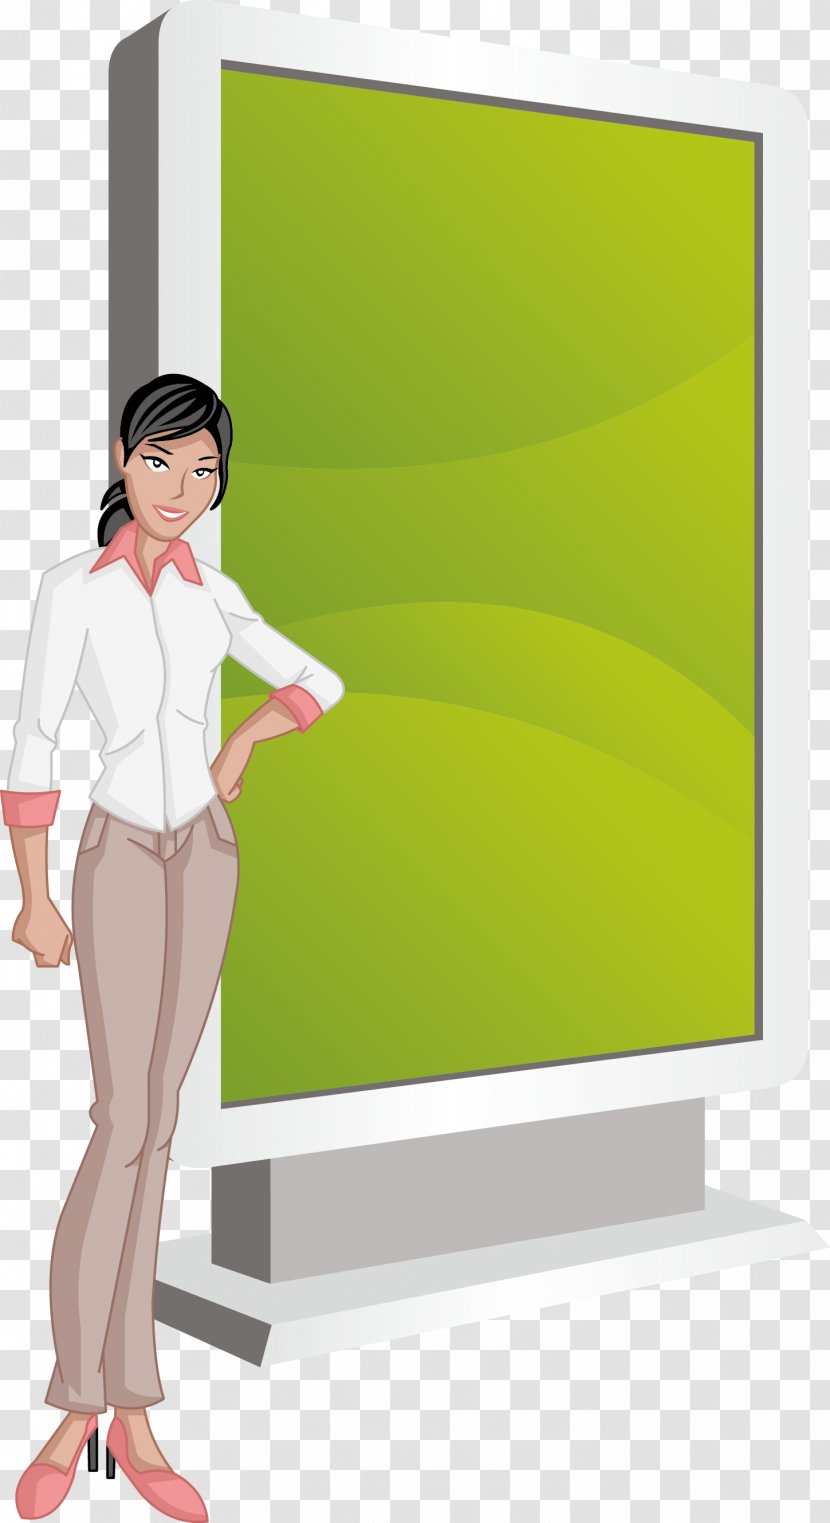 Adobe Illustrator - Frame - Business Person Billboard Transparent PNG